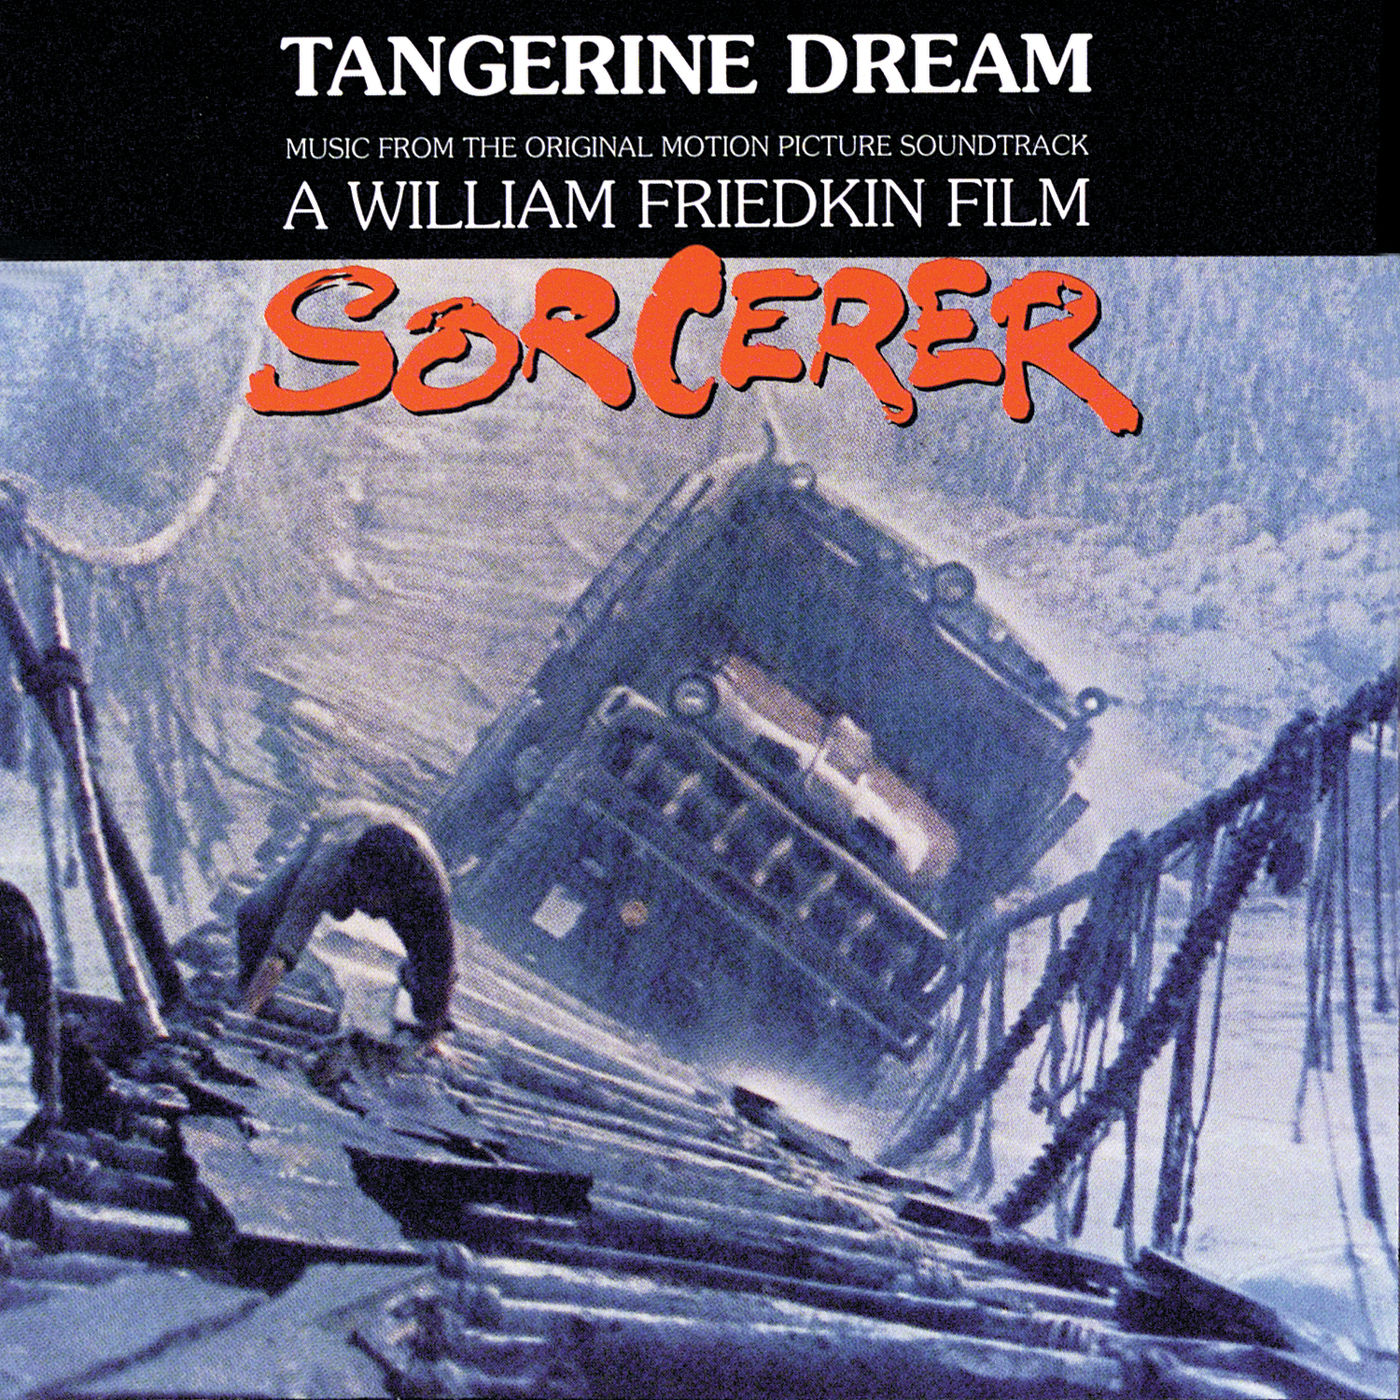 Tangerine Dream - Sorcerer (1977/2021) [FLAC 24bit/96kHz]